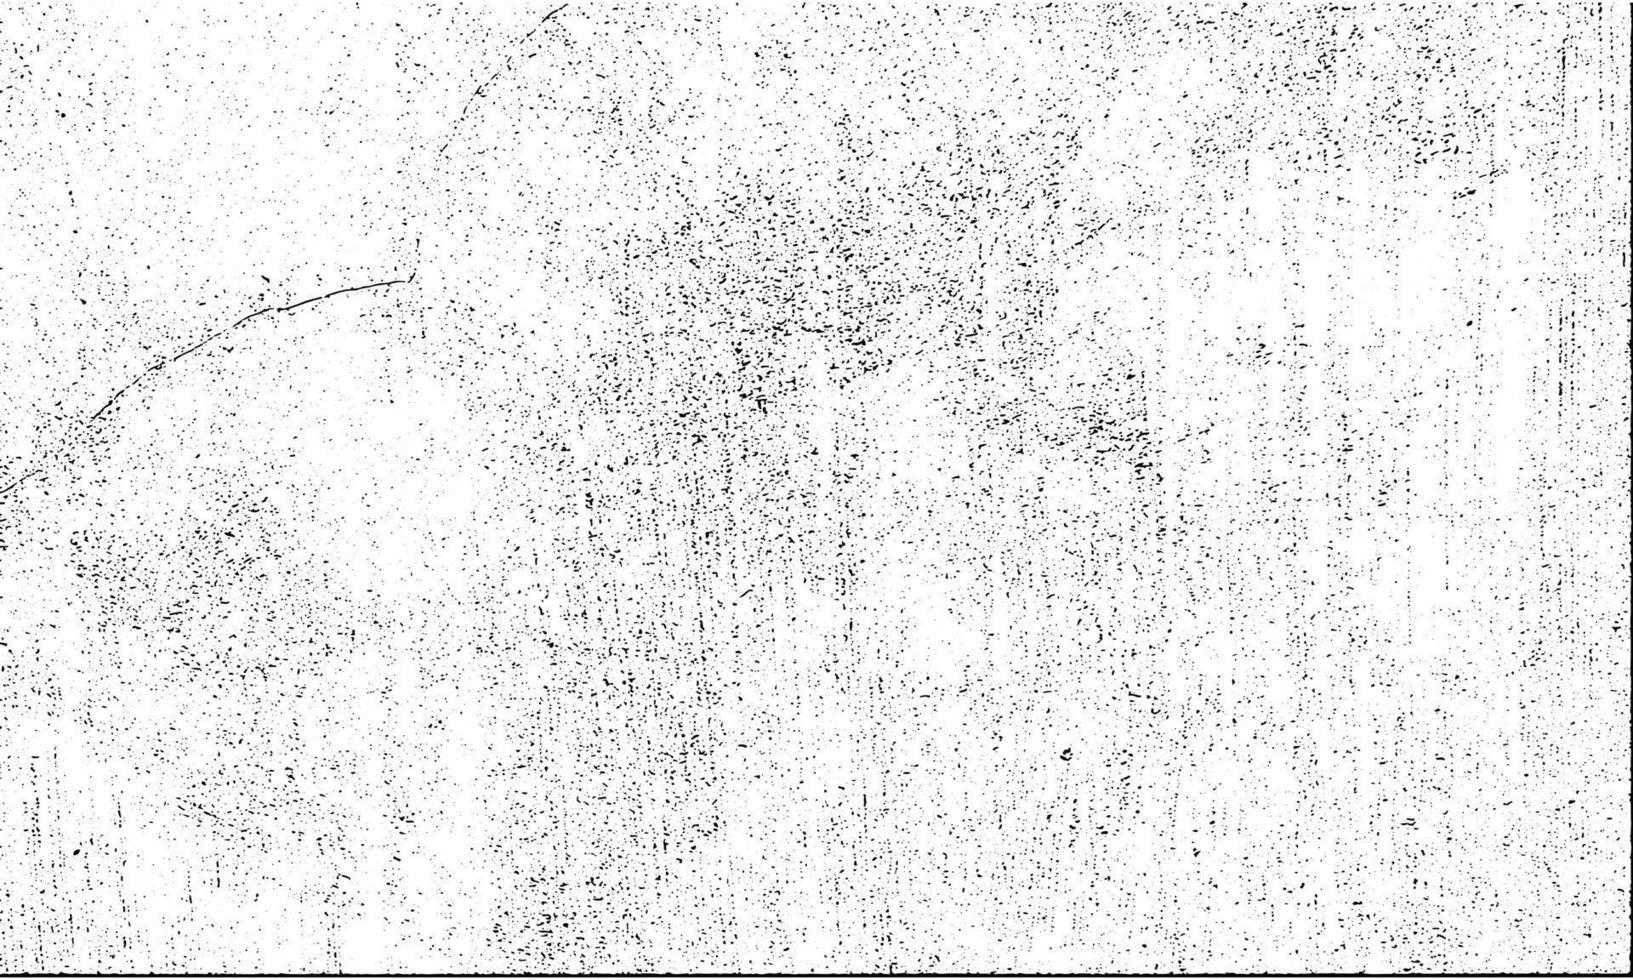 vuil korrelig postzegel en krassen bedekking wit achtergrond. grunge verontrust stof deeltje wit en zwart. vector illustratie